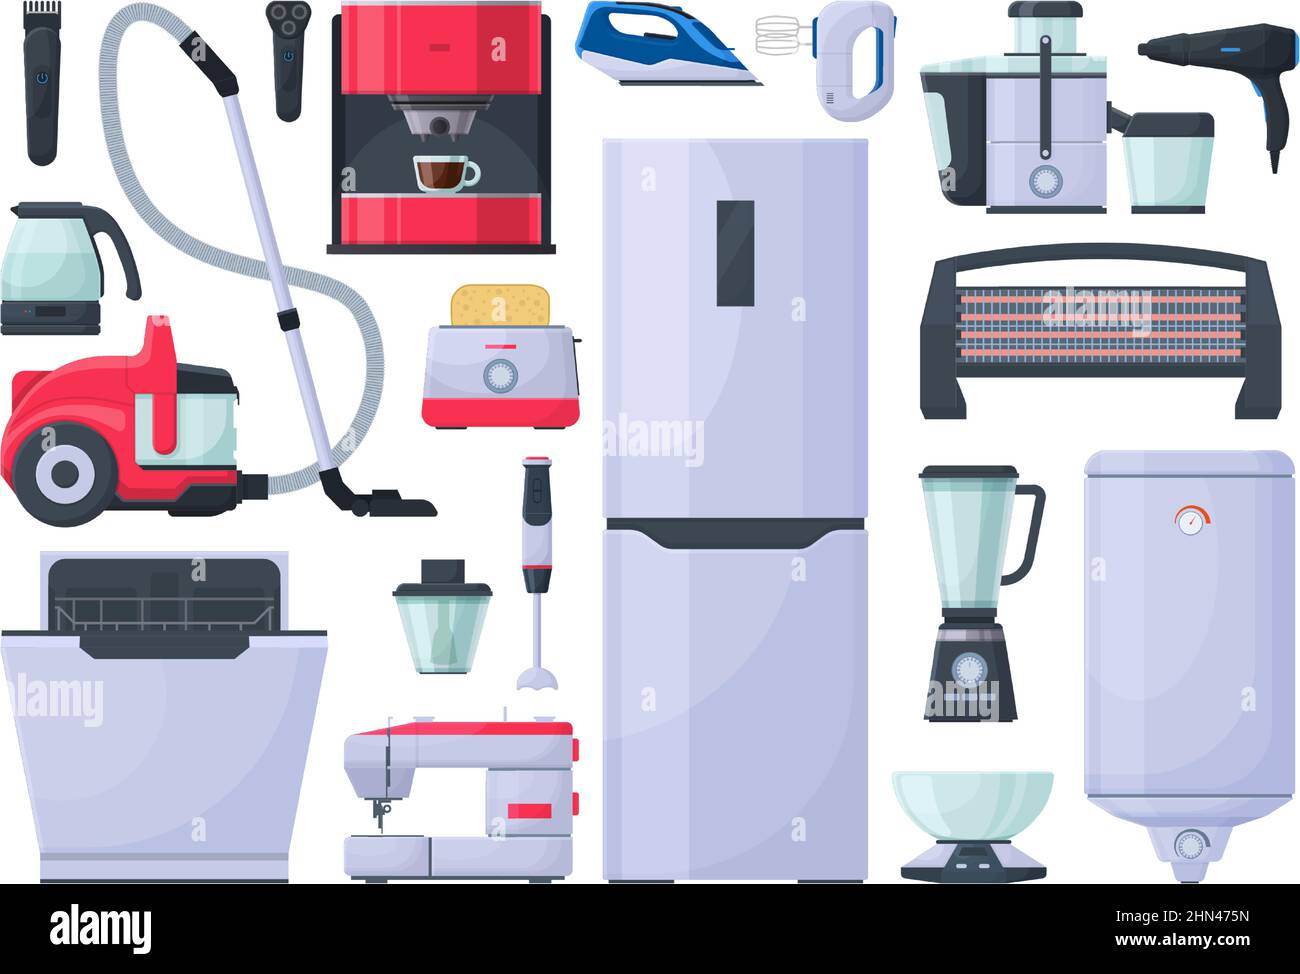 Haushaltsgeräte, Staubsauger, Bügeleisen und Kaffeemaschine. Kühlschrank, Mixer und Toaster elektronische Gadgets Vektor Illustration Set. Elektrisch Stock Vektor